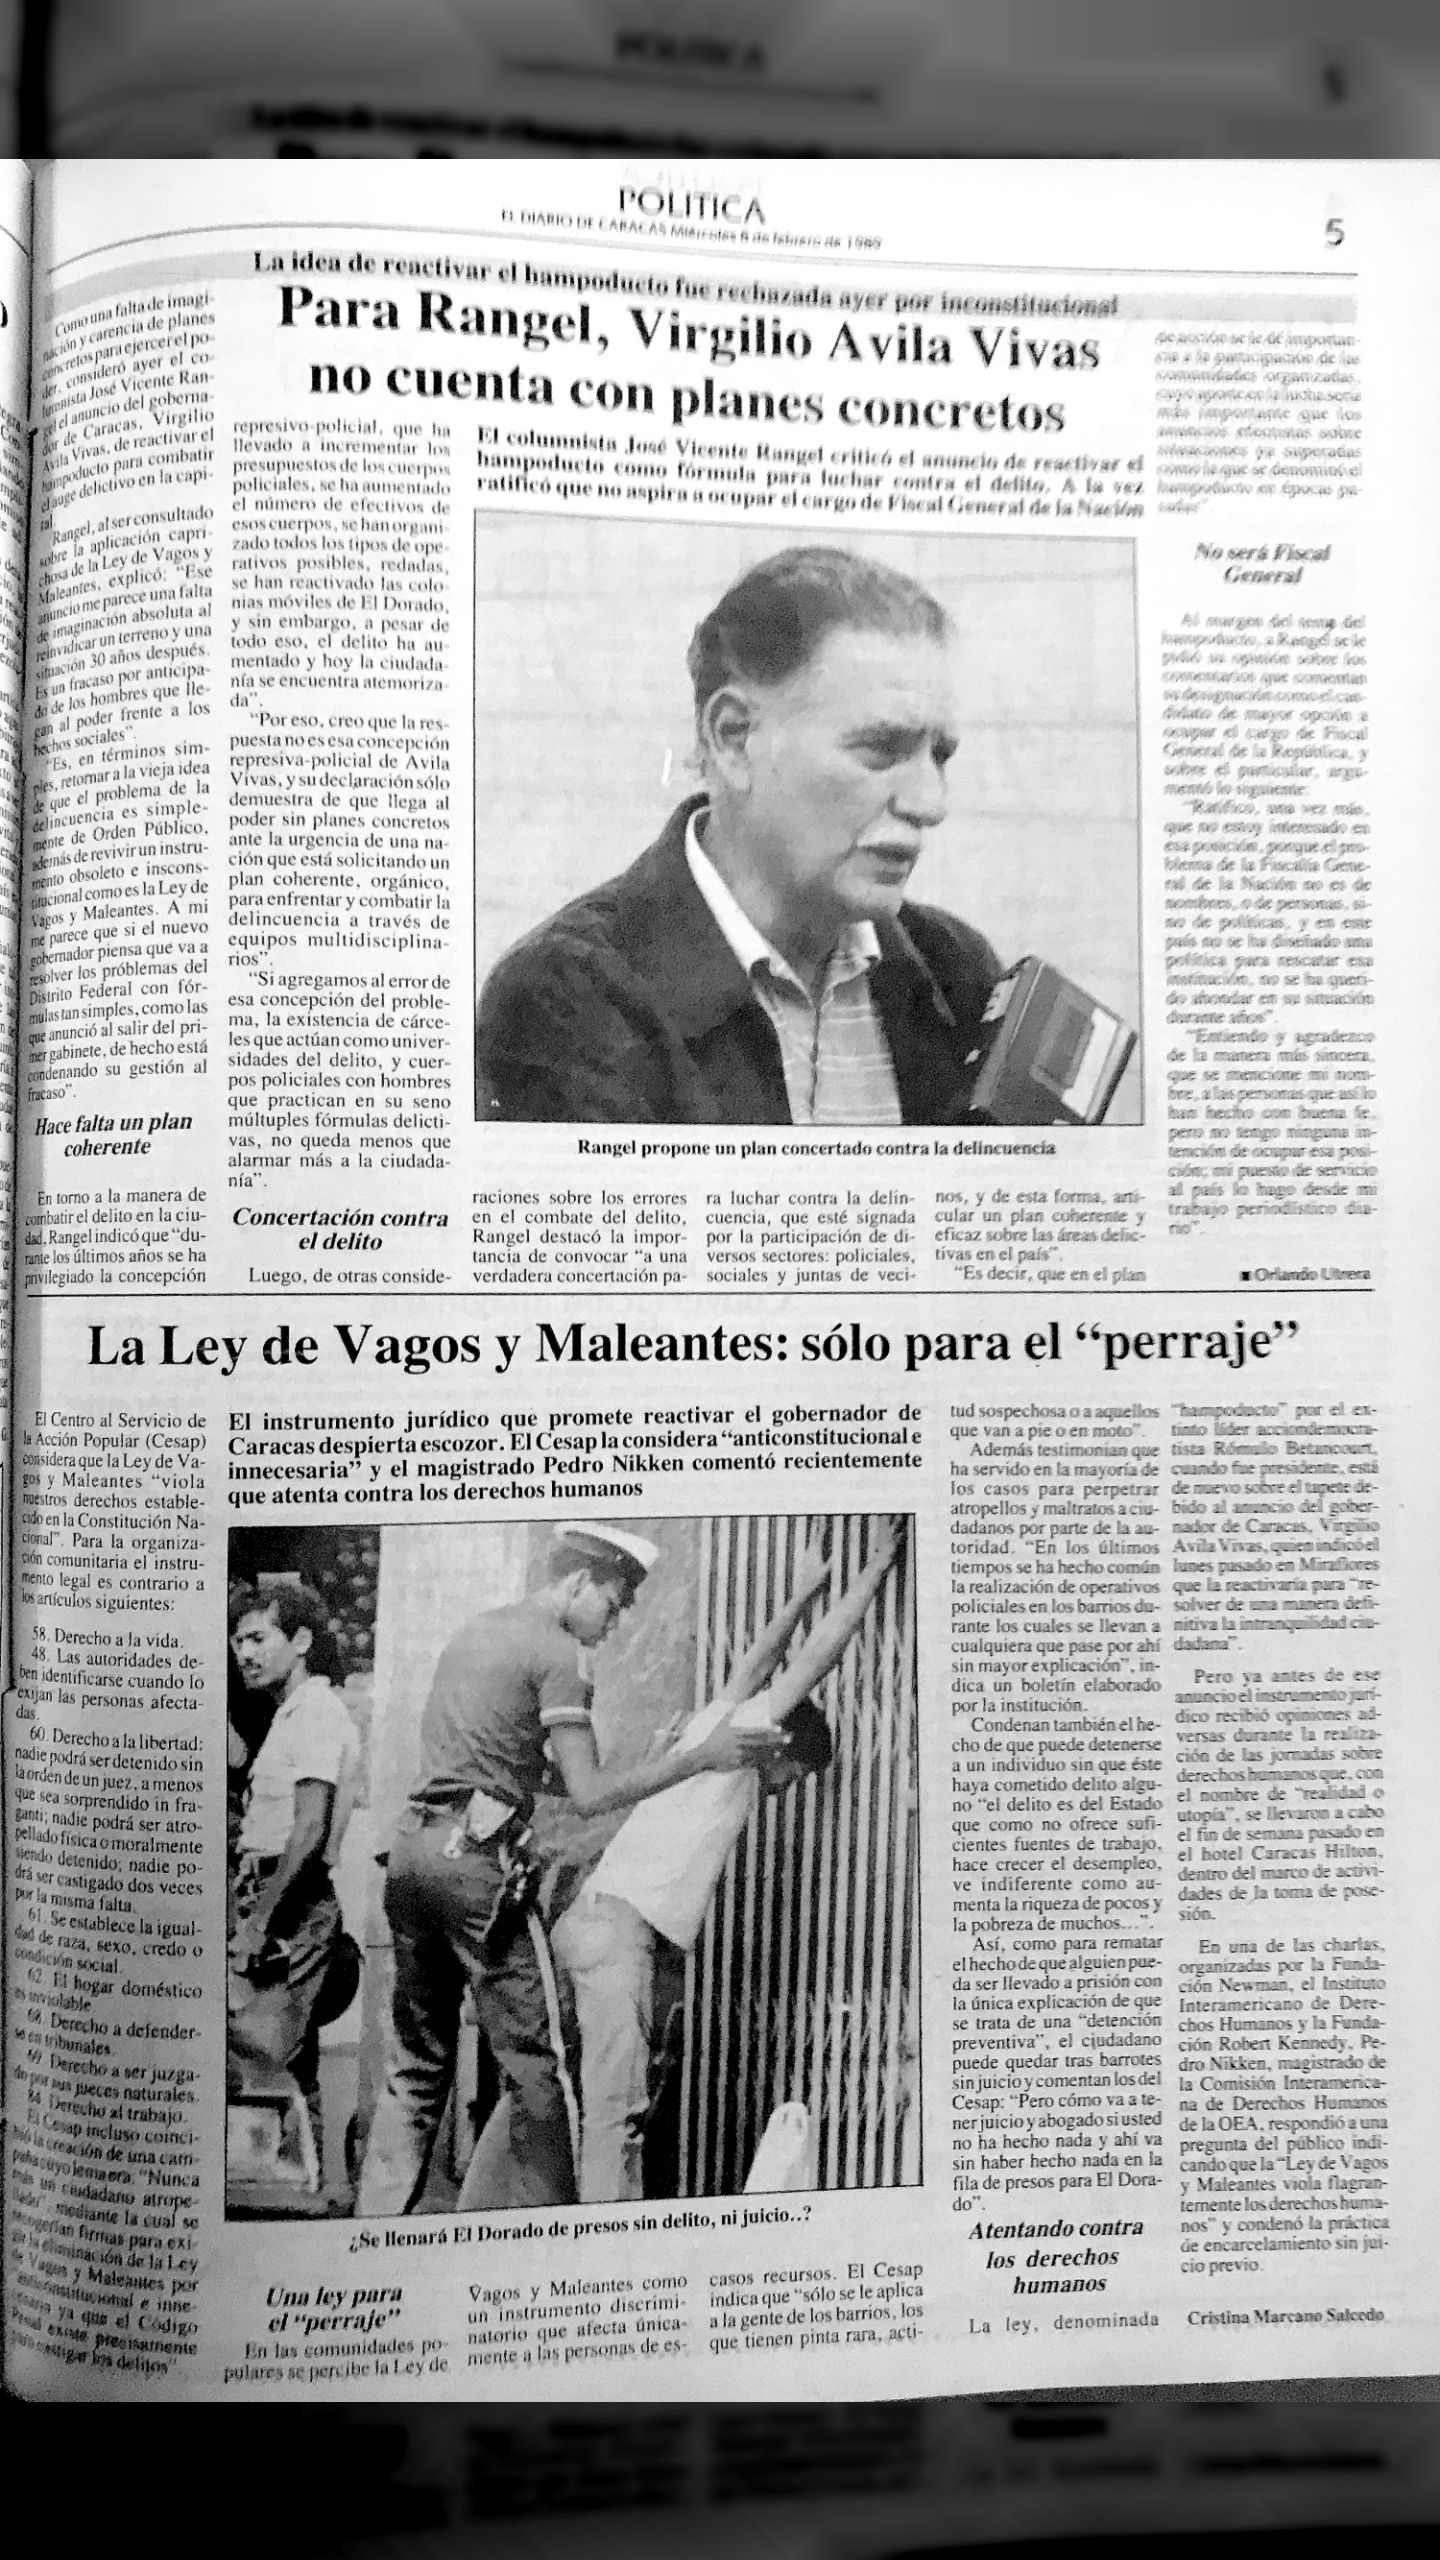 Regresa el Hampoducto (El Diario de Caracas, 8 de febrero 1989)